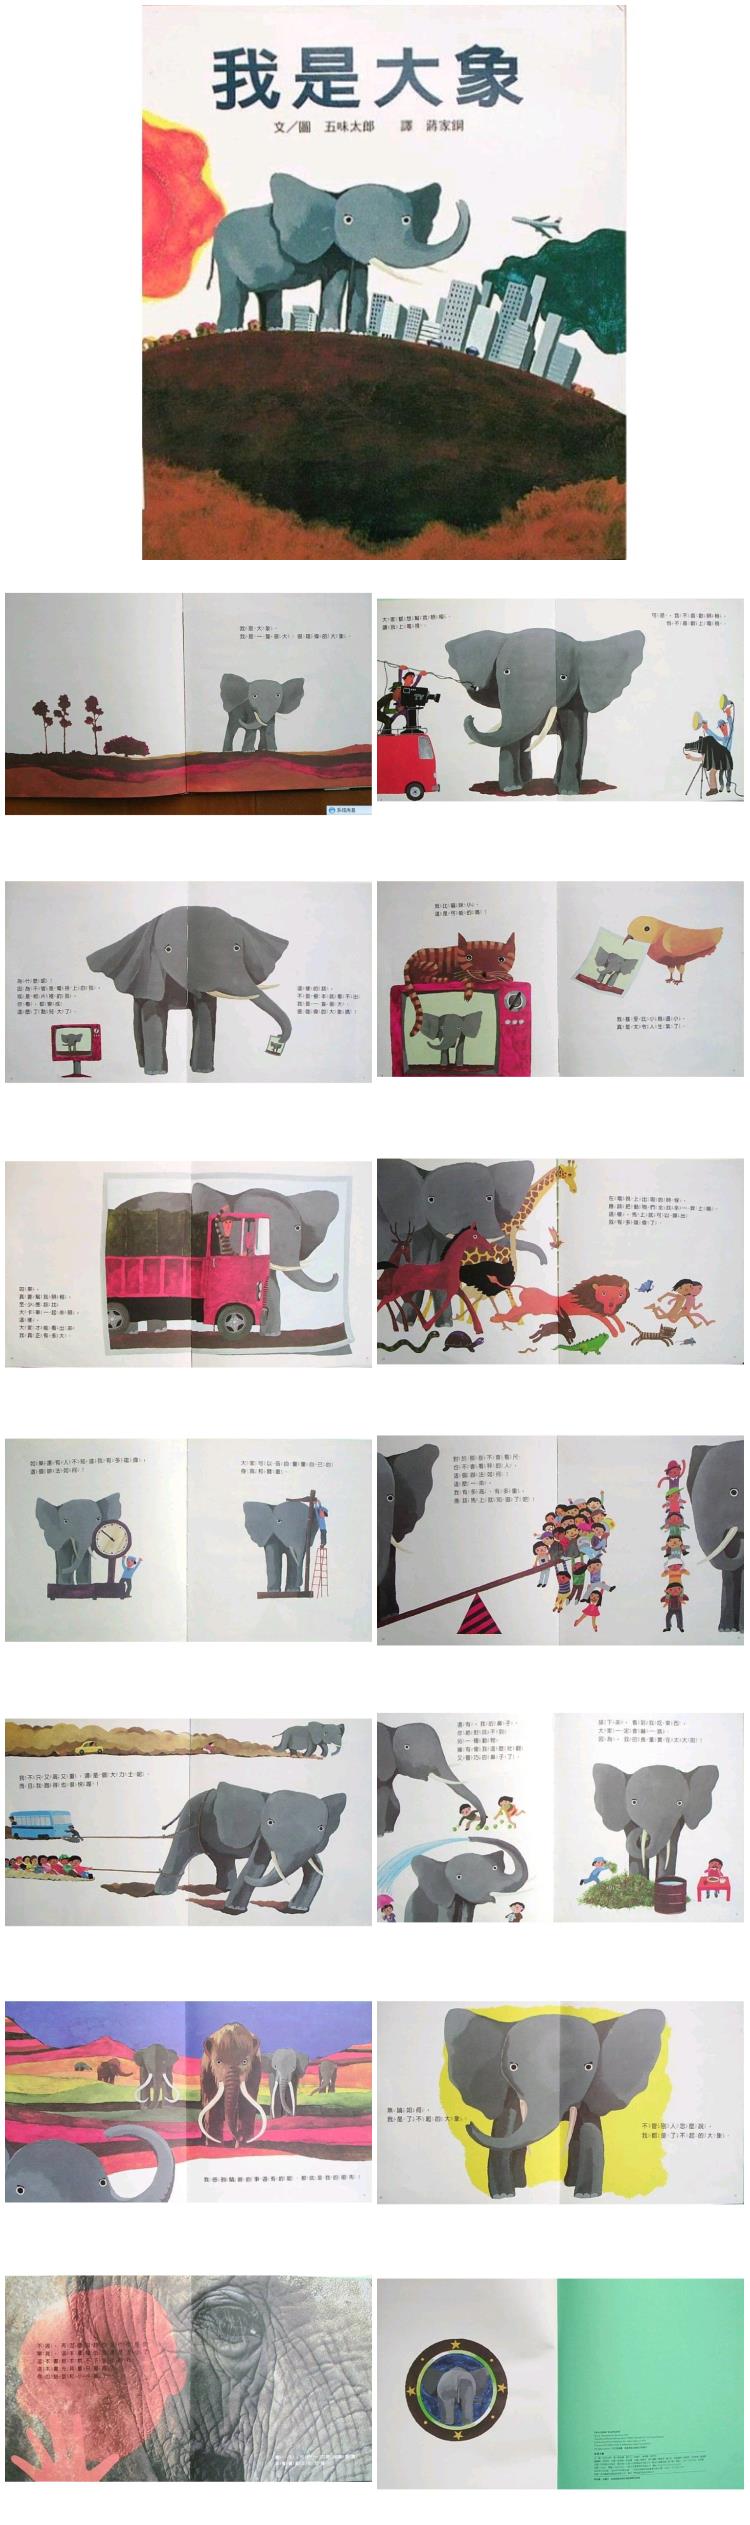 《我是大象》童话绘本儿童故事PPT